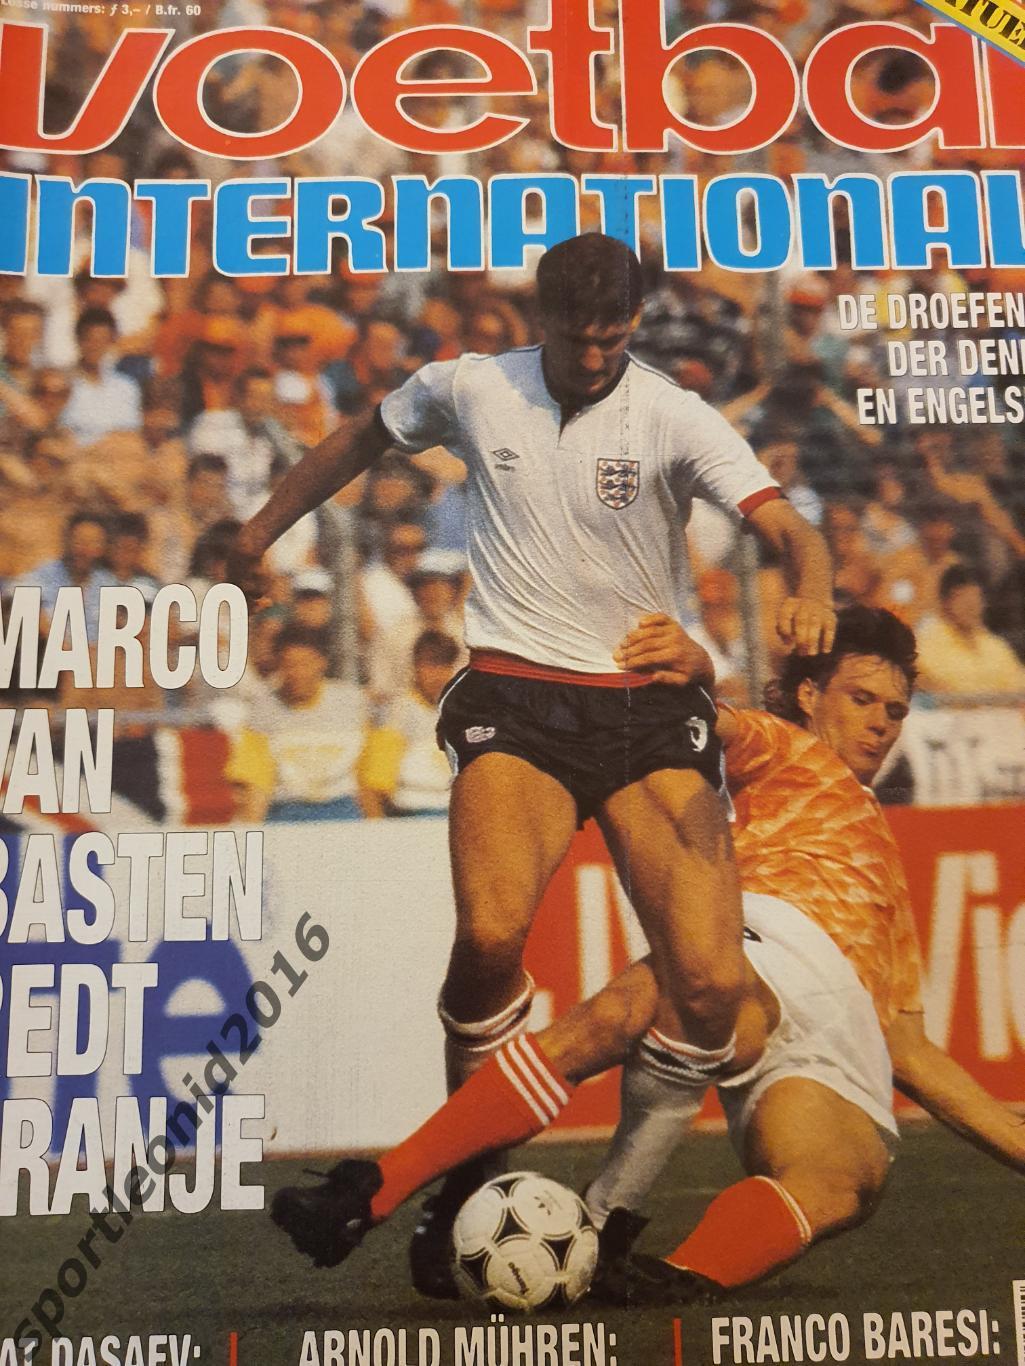 Voetbal International 1988+87.10 топ выпусков.В том числе И ВСЕ к ЧE-88.8 1